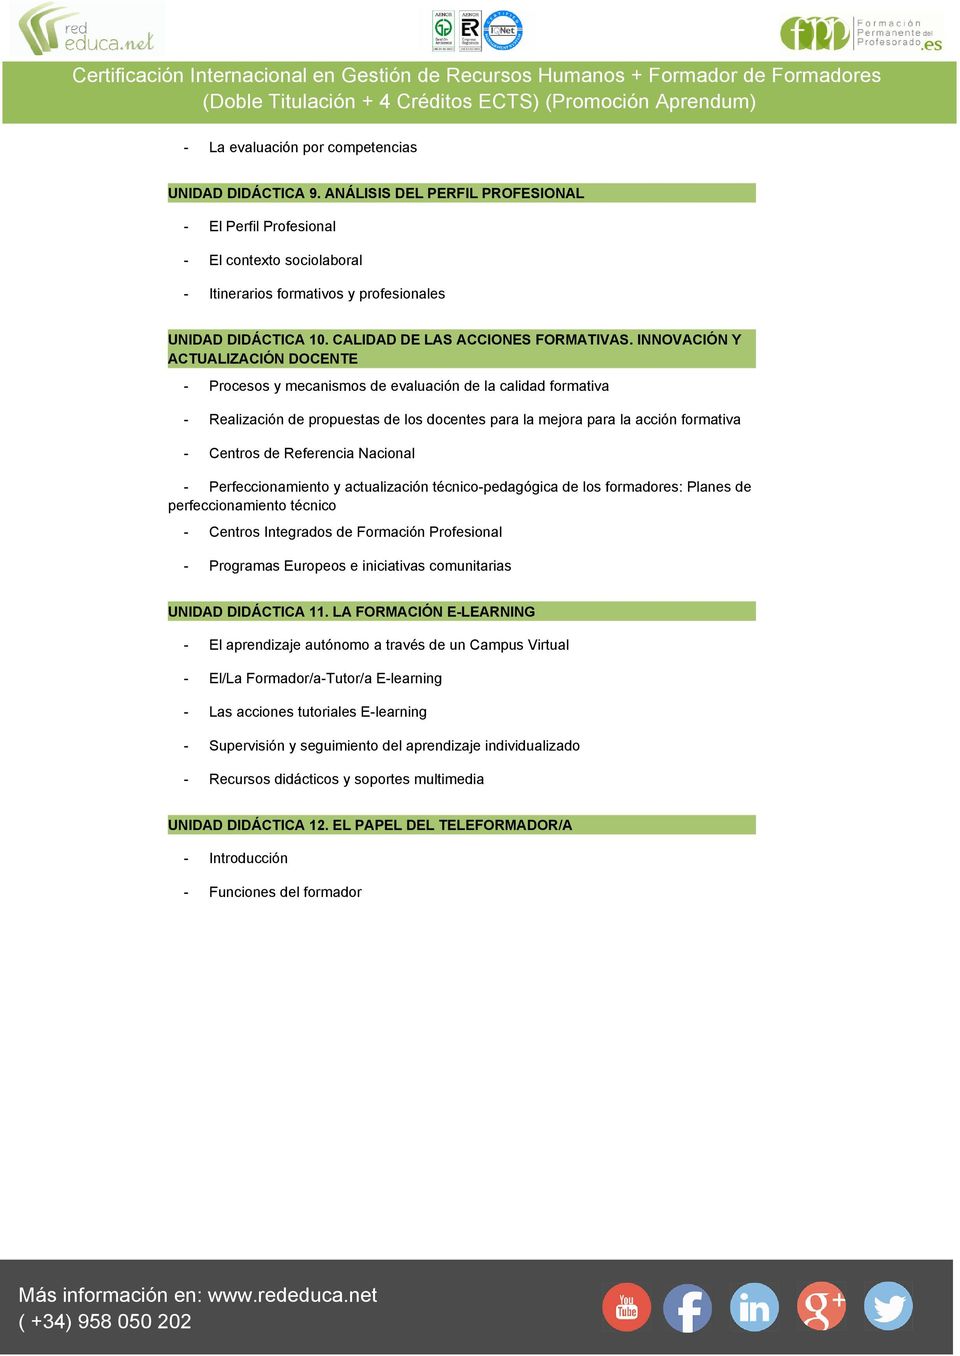 INNOVACIÓN Y ACTUALIZACIÓN DOCENTE - Procesos y mecanismos de evaluación de la calidad formativa - Realización de propuestas de los docentes para la mejora para la acción formativa - Centros de